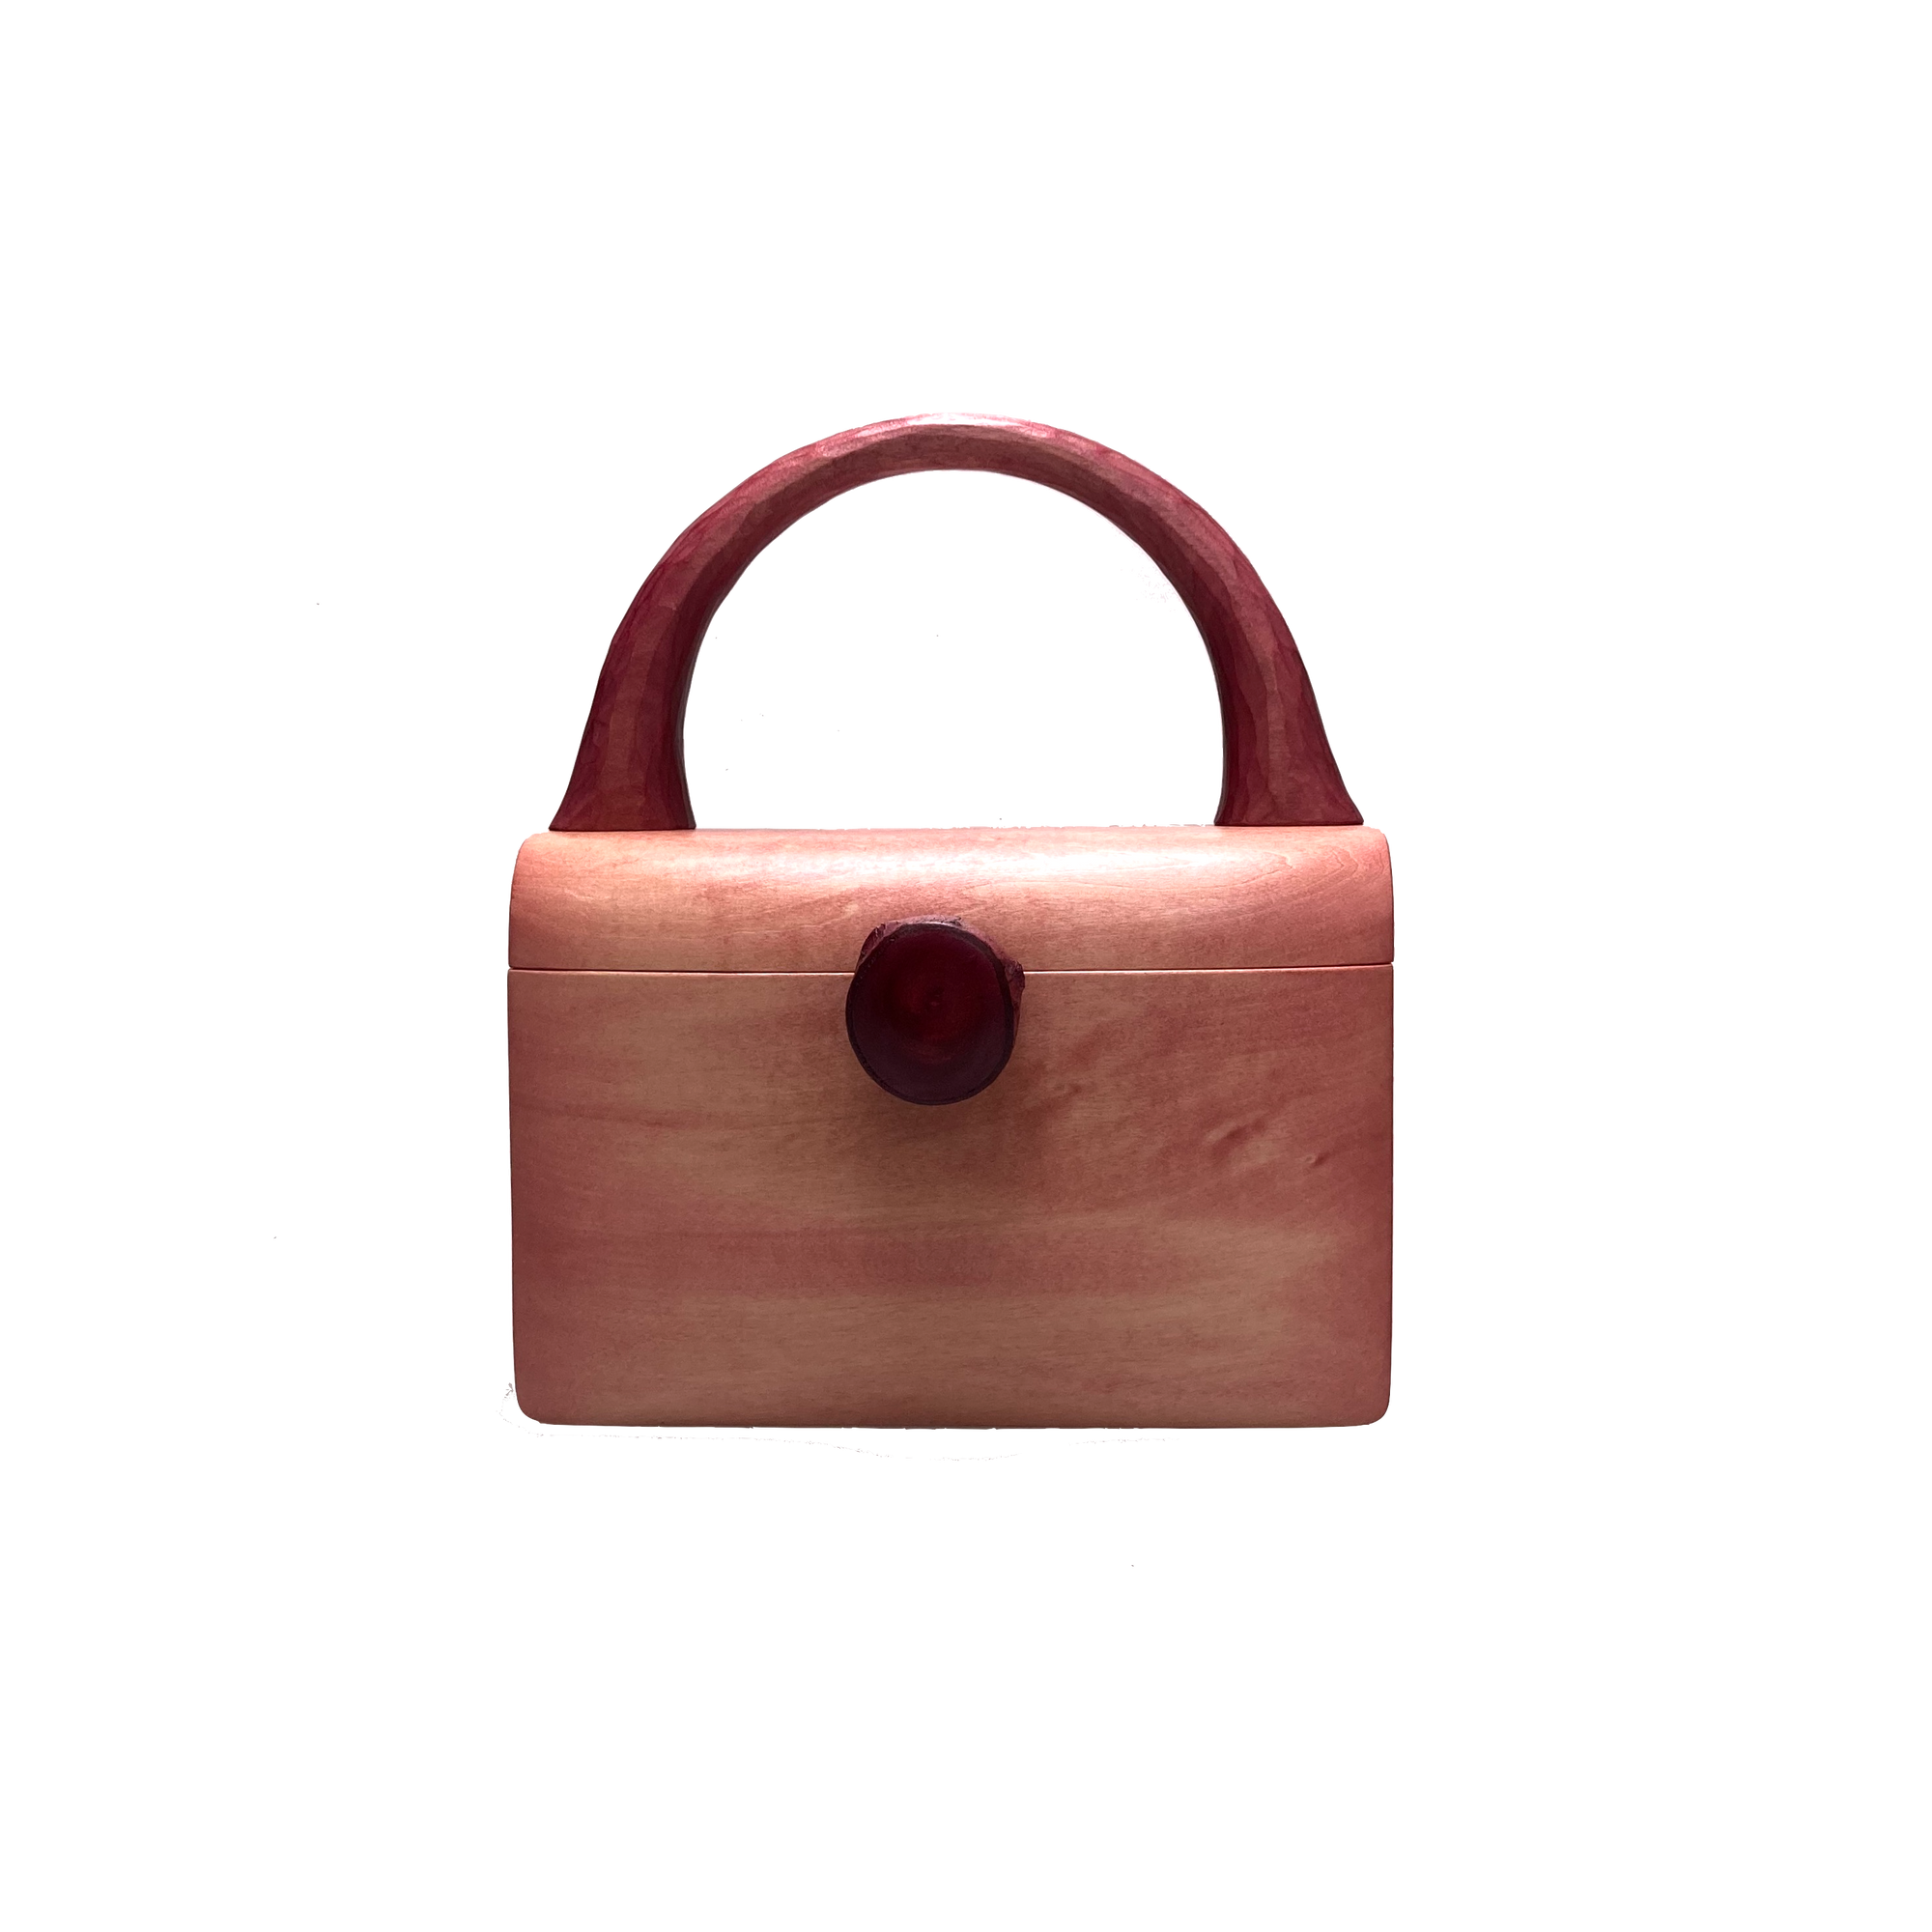 樹の鞄 sakura pink